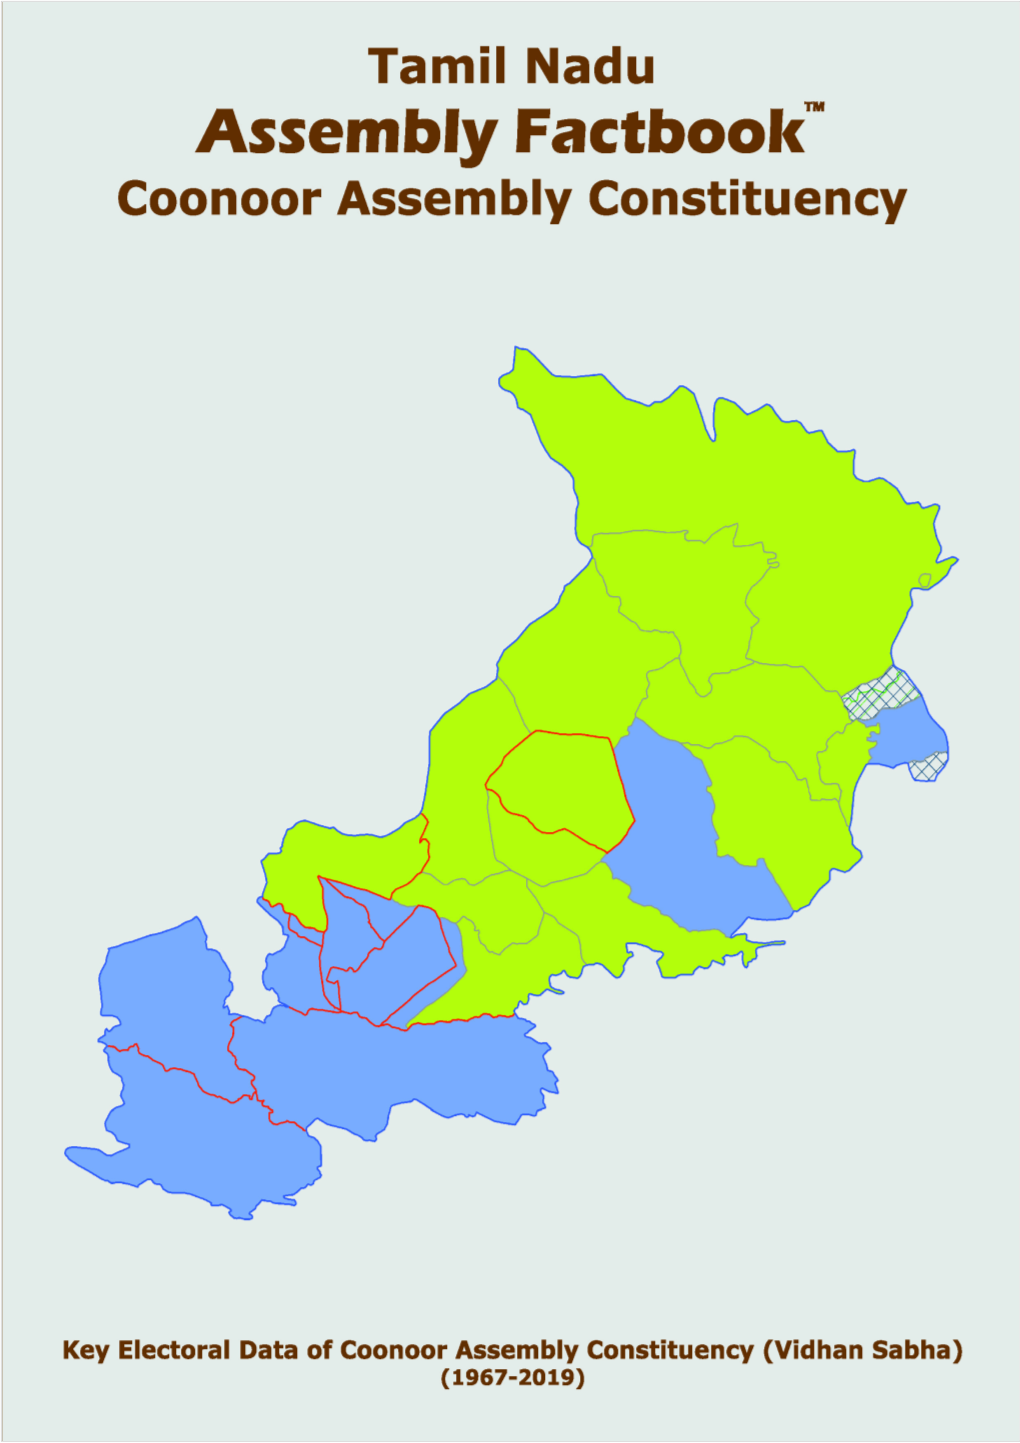 Coonoor Assembly Tamil Nadu Factbook